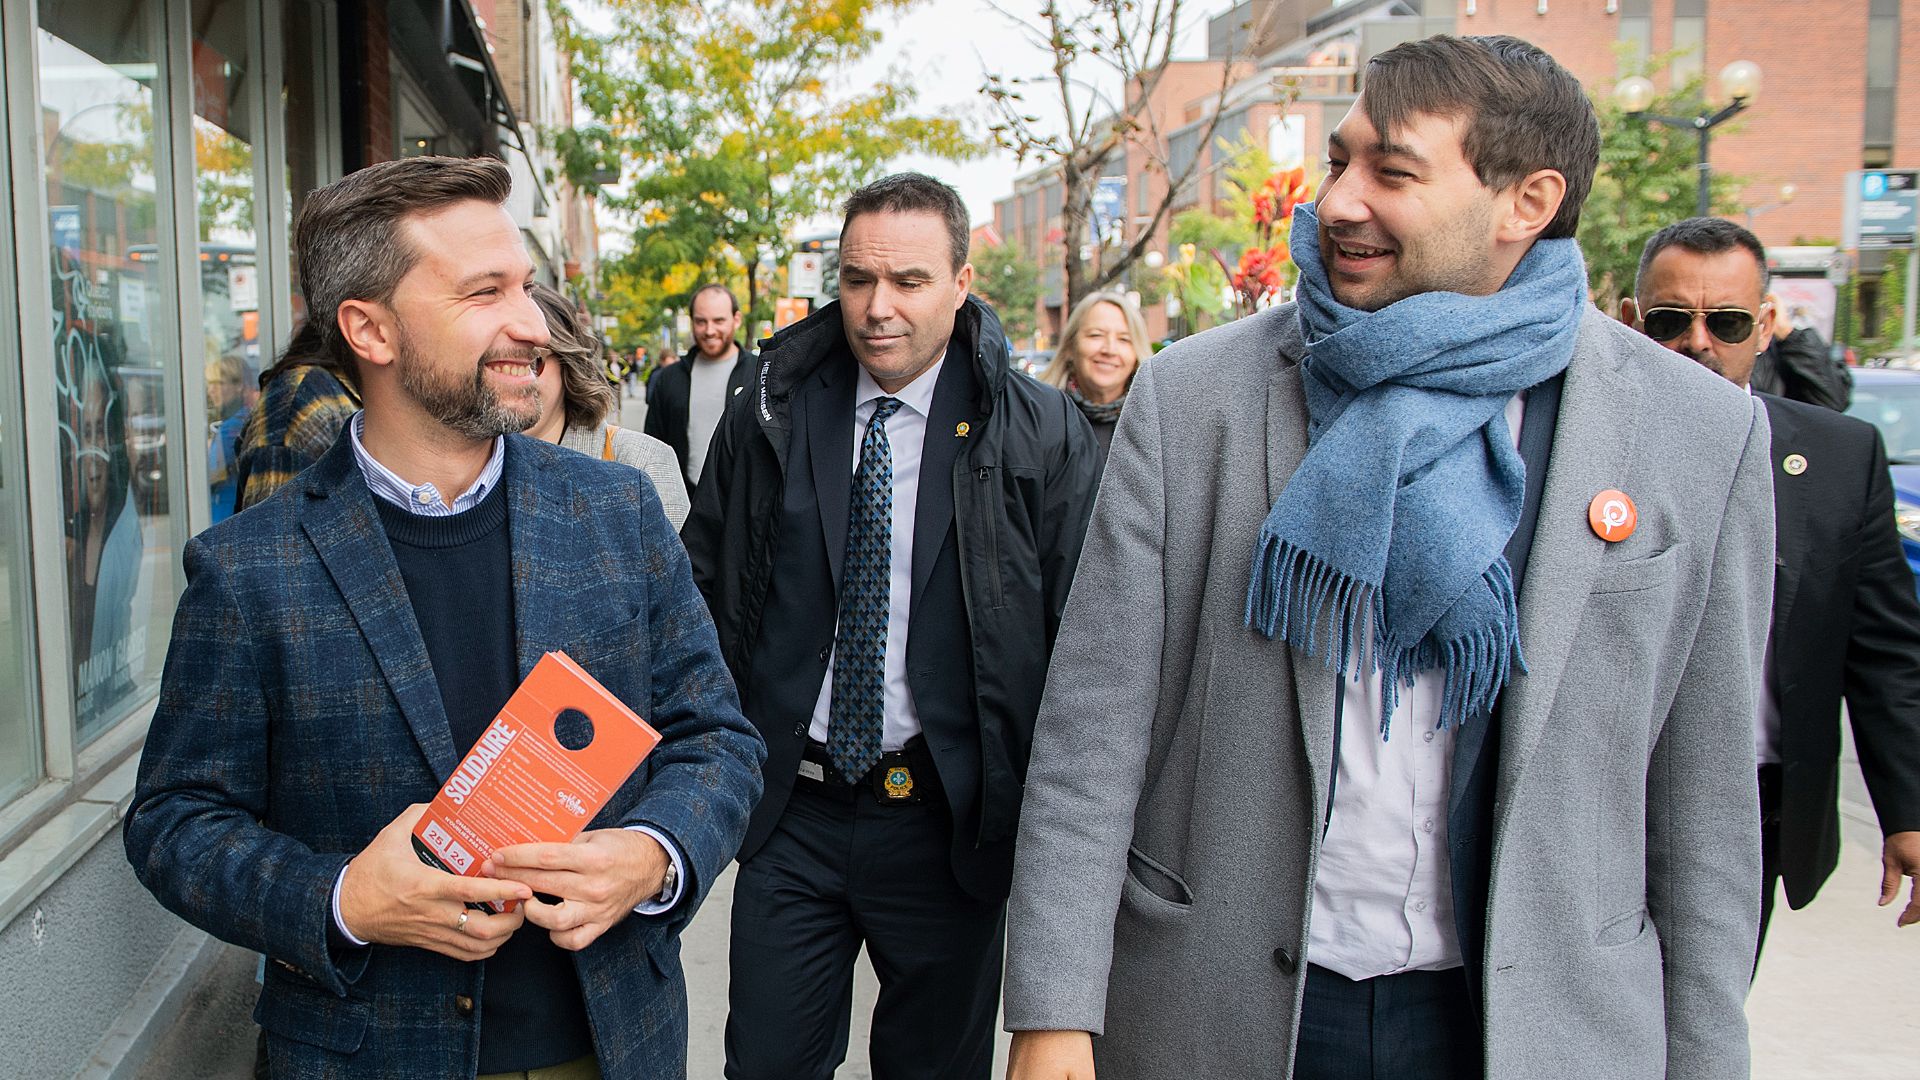 Le candidat solidaire Guillaume Cliche-Rivard (à droite) accompagné du co-porte-parole de Québec solidaire, Gabriel Nadeau-Dubois (à droite) lors de la campagne électorale provinciale.